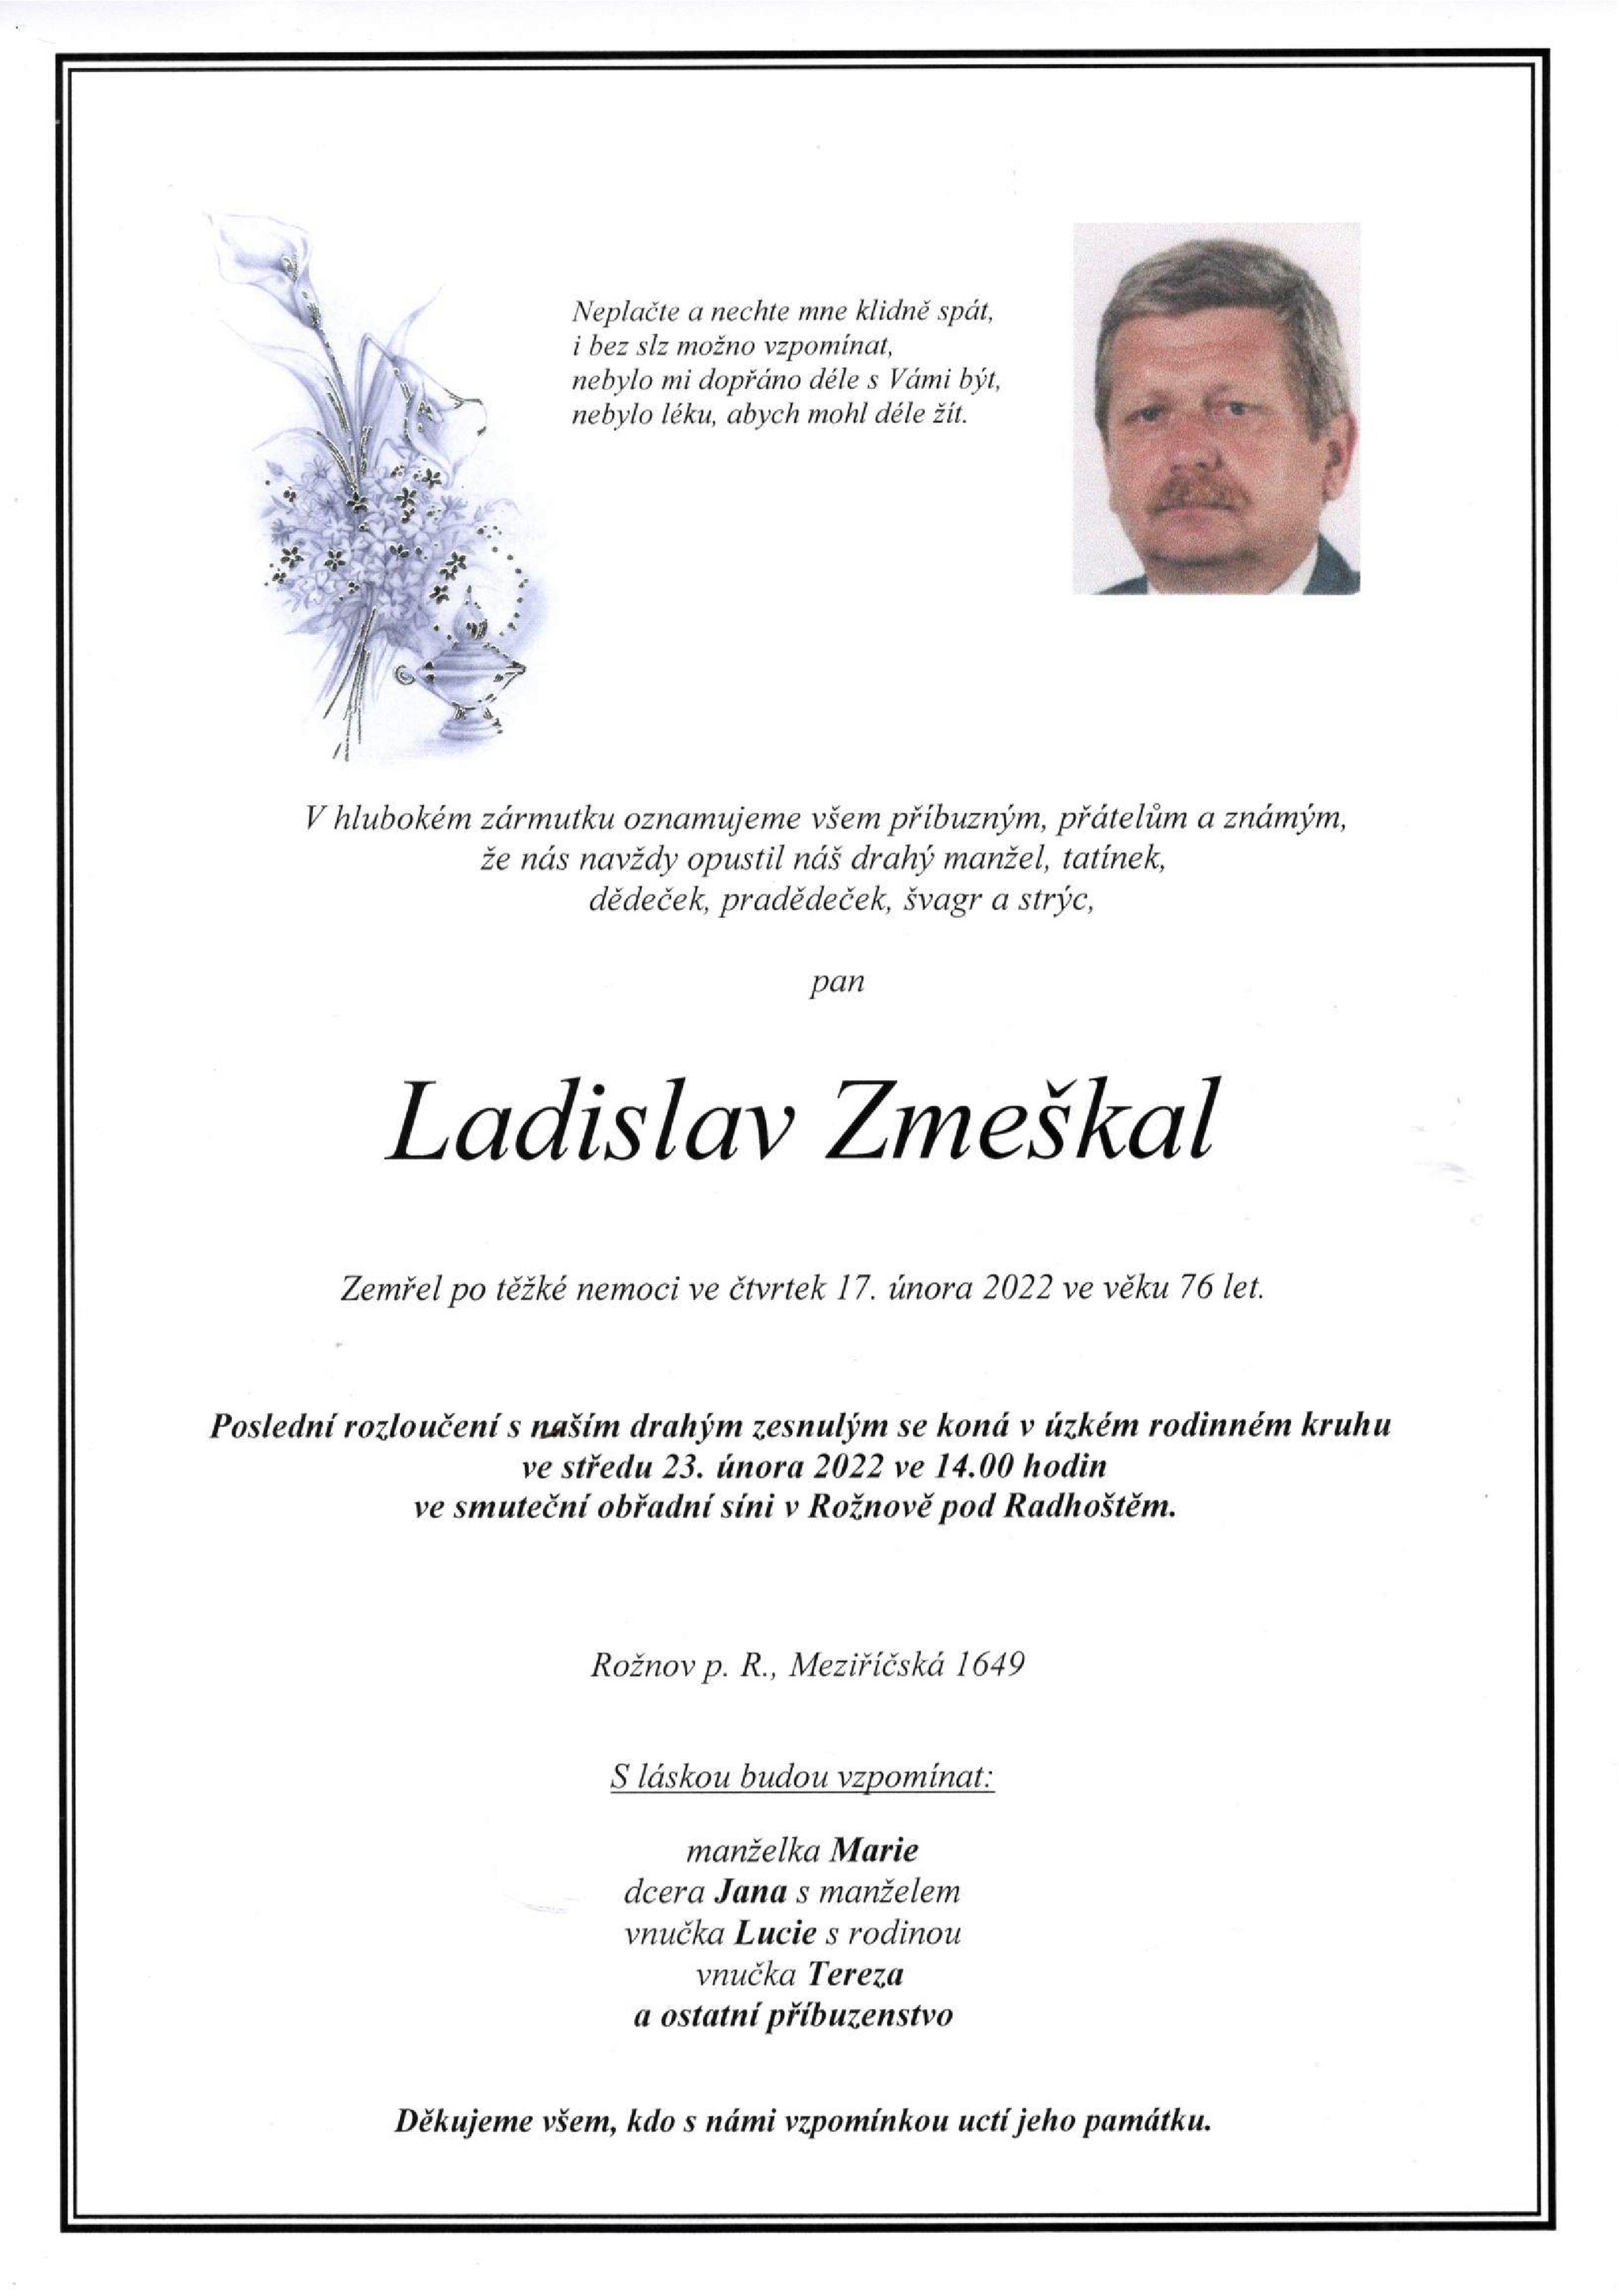 Ladislav Zmeškal